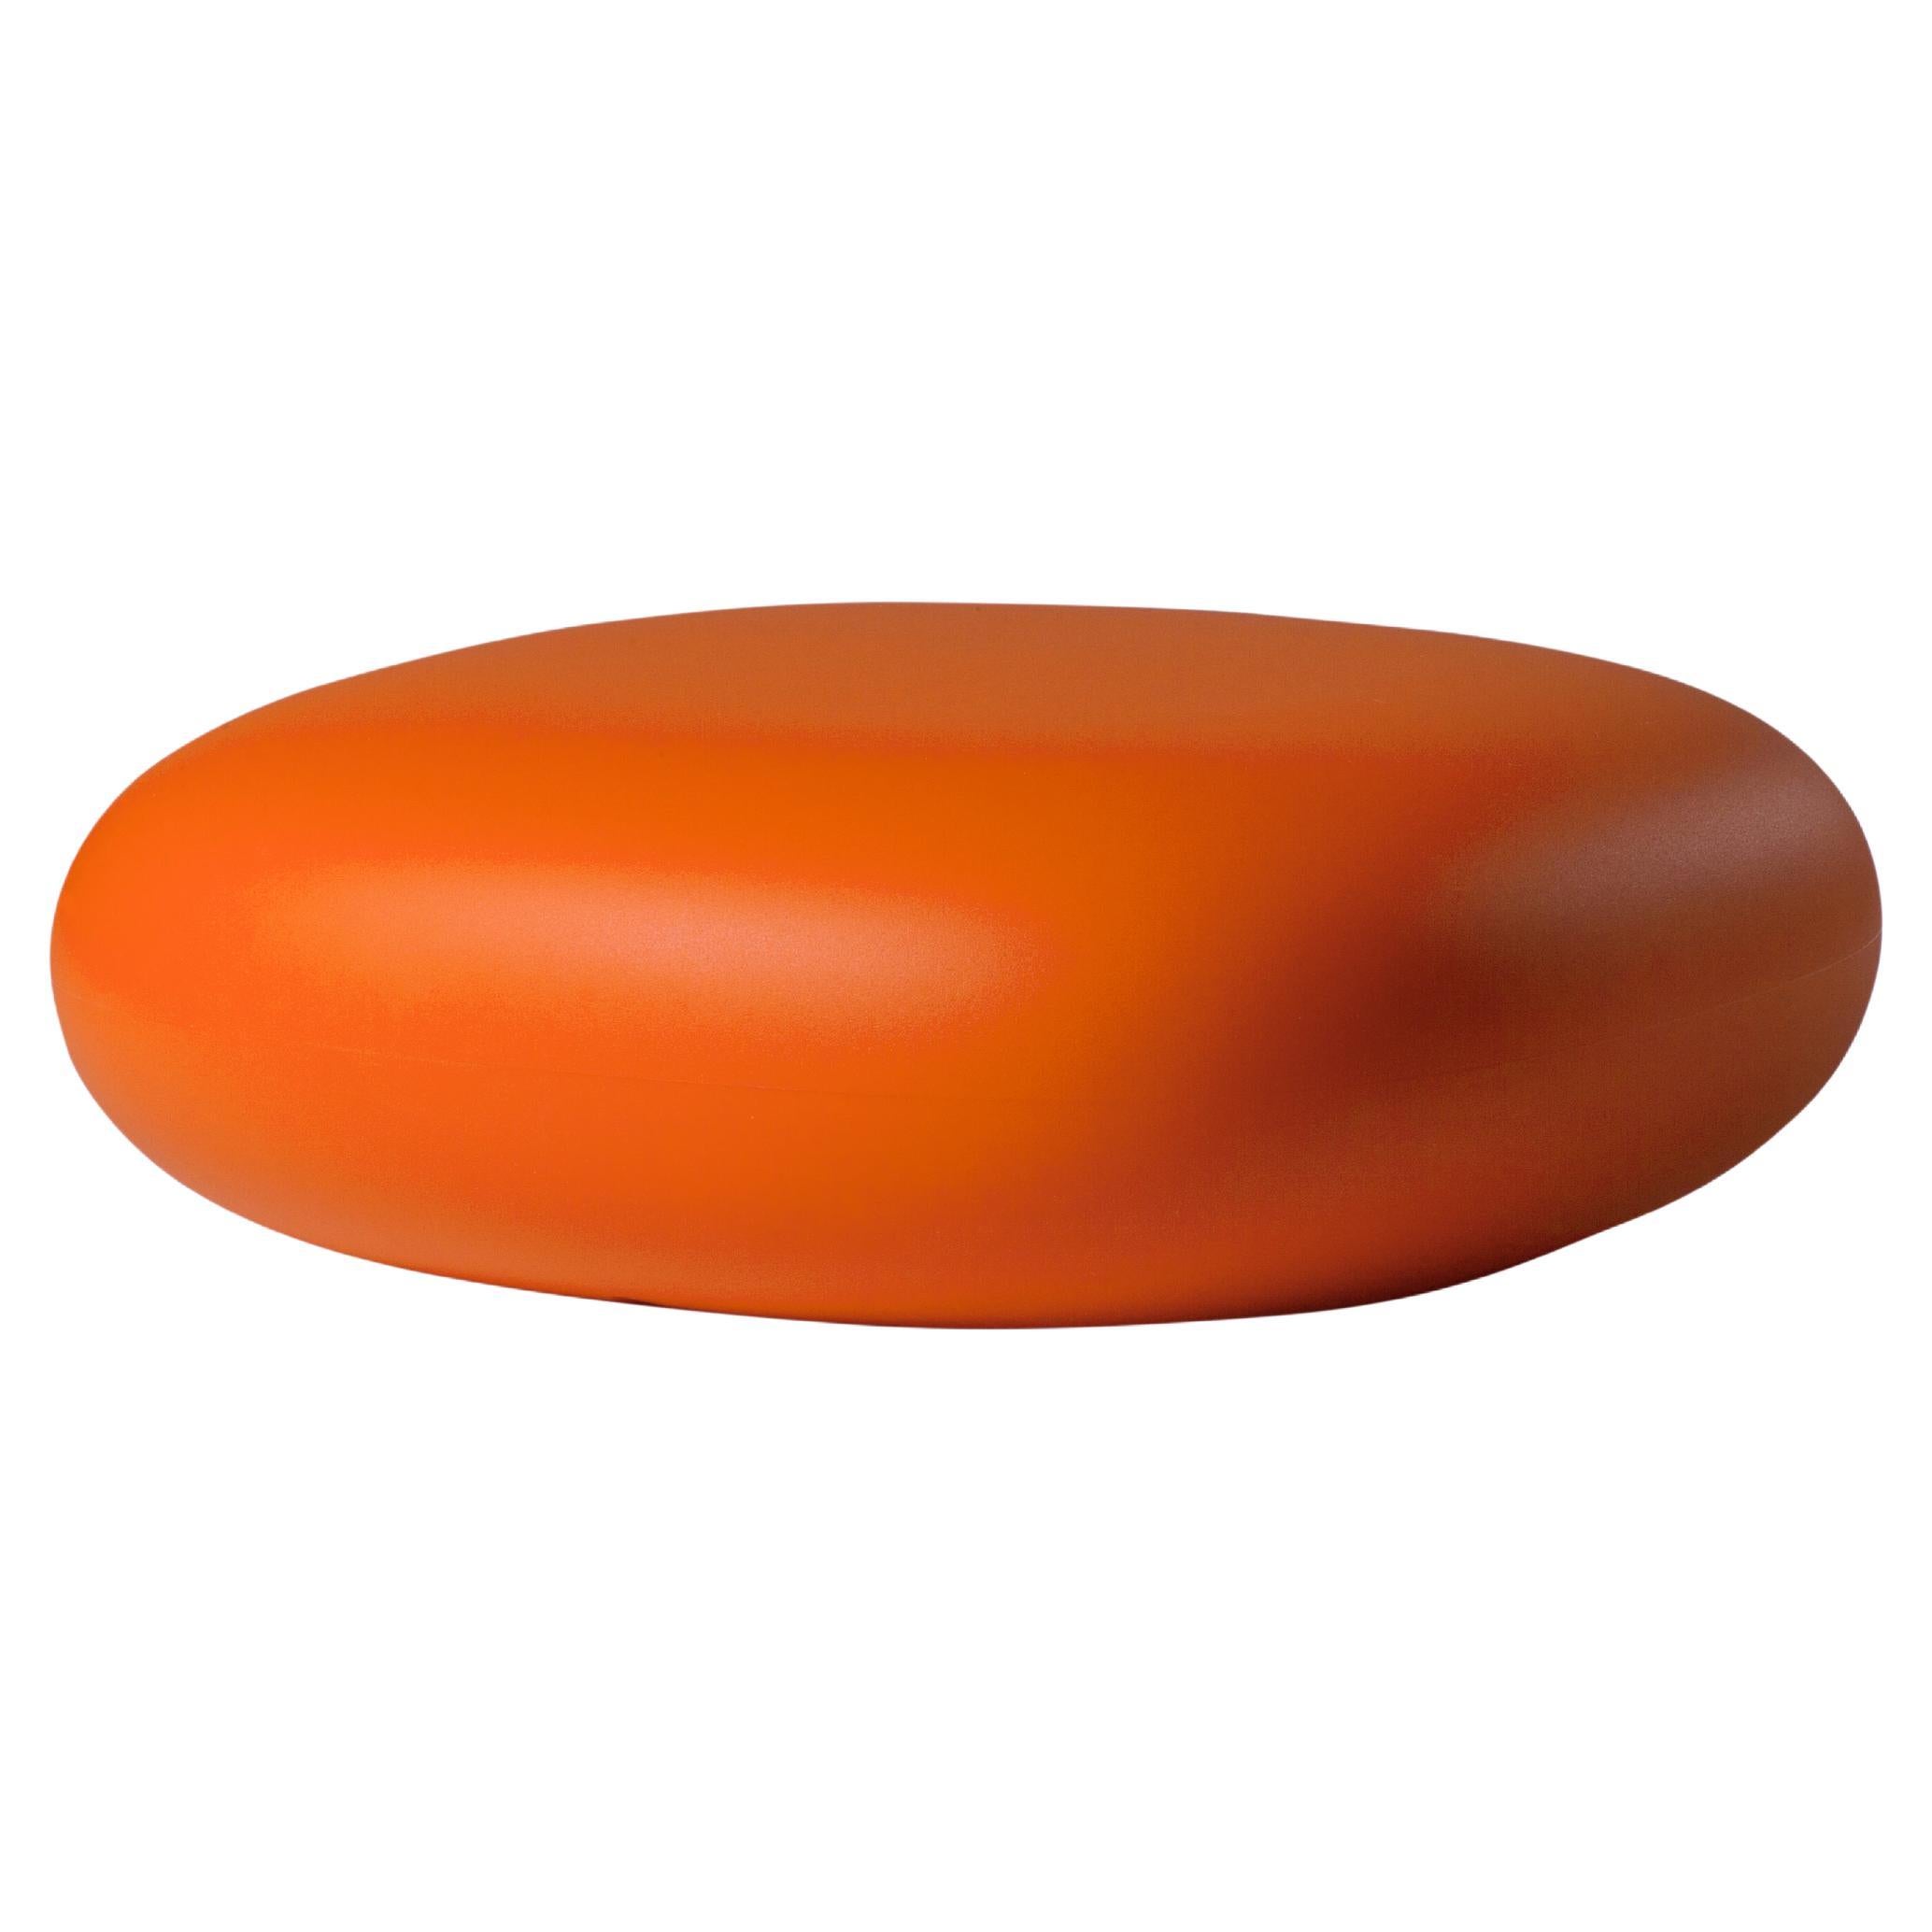 Slide Design Chubby Low Pouf in Pumpkin Orange by Marcel Wanders